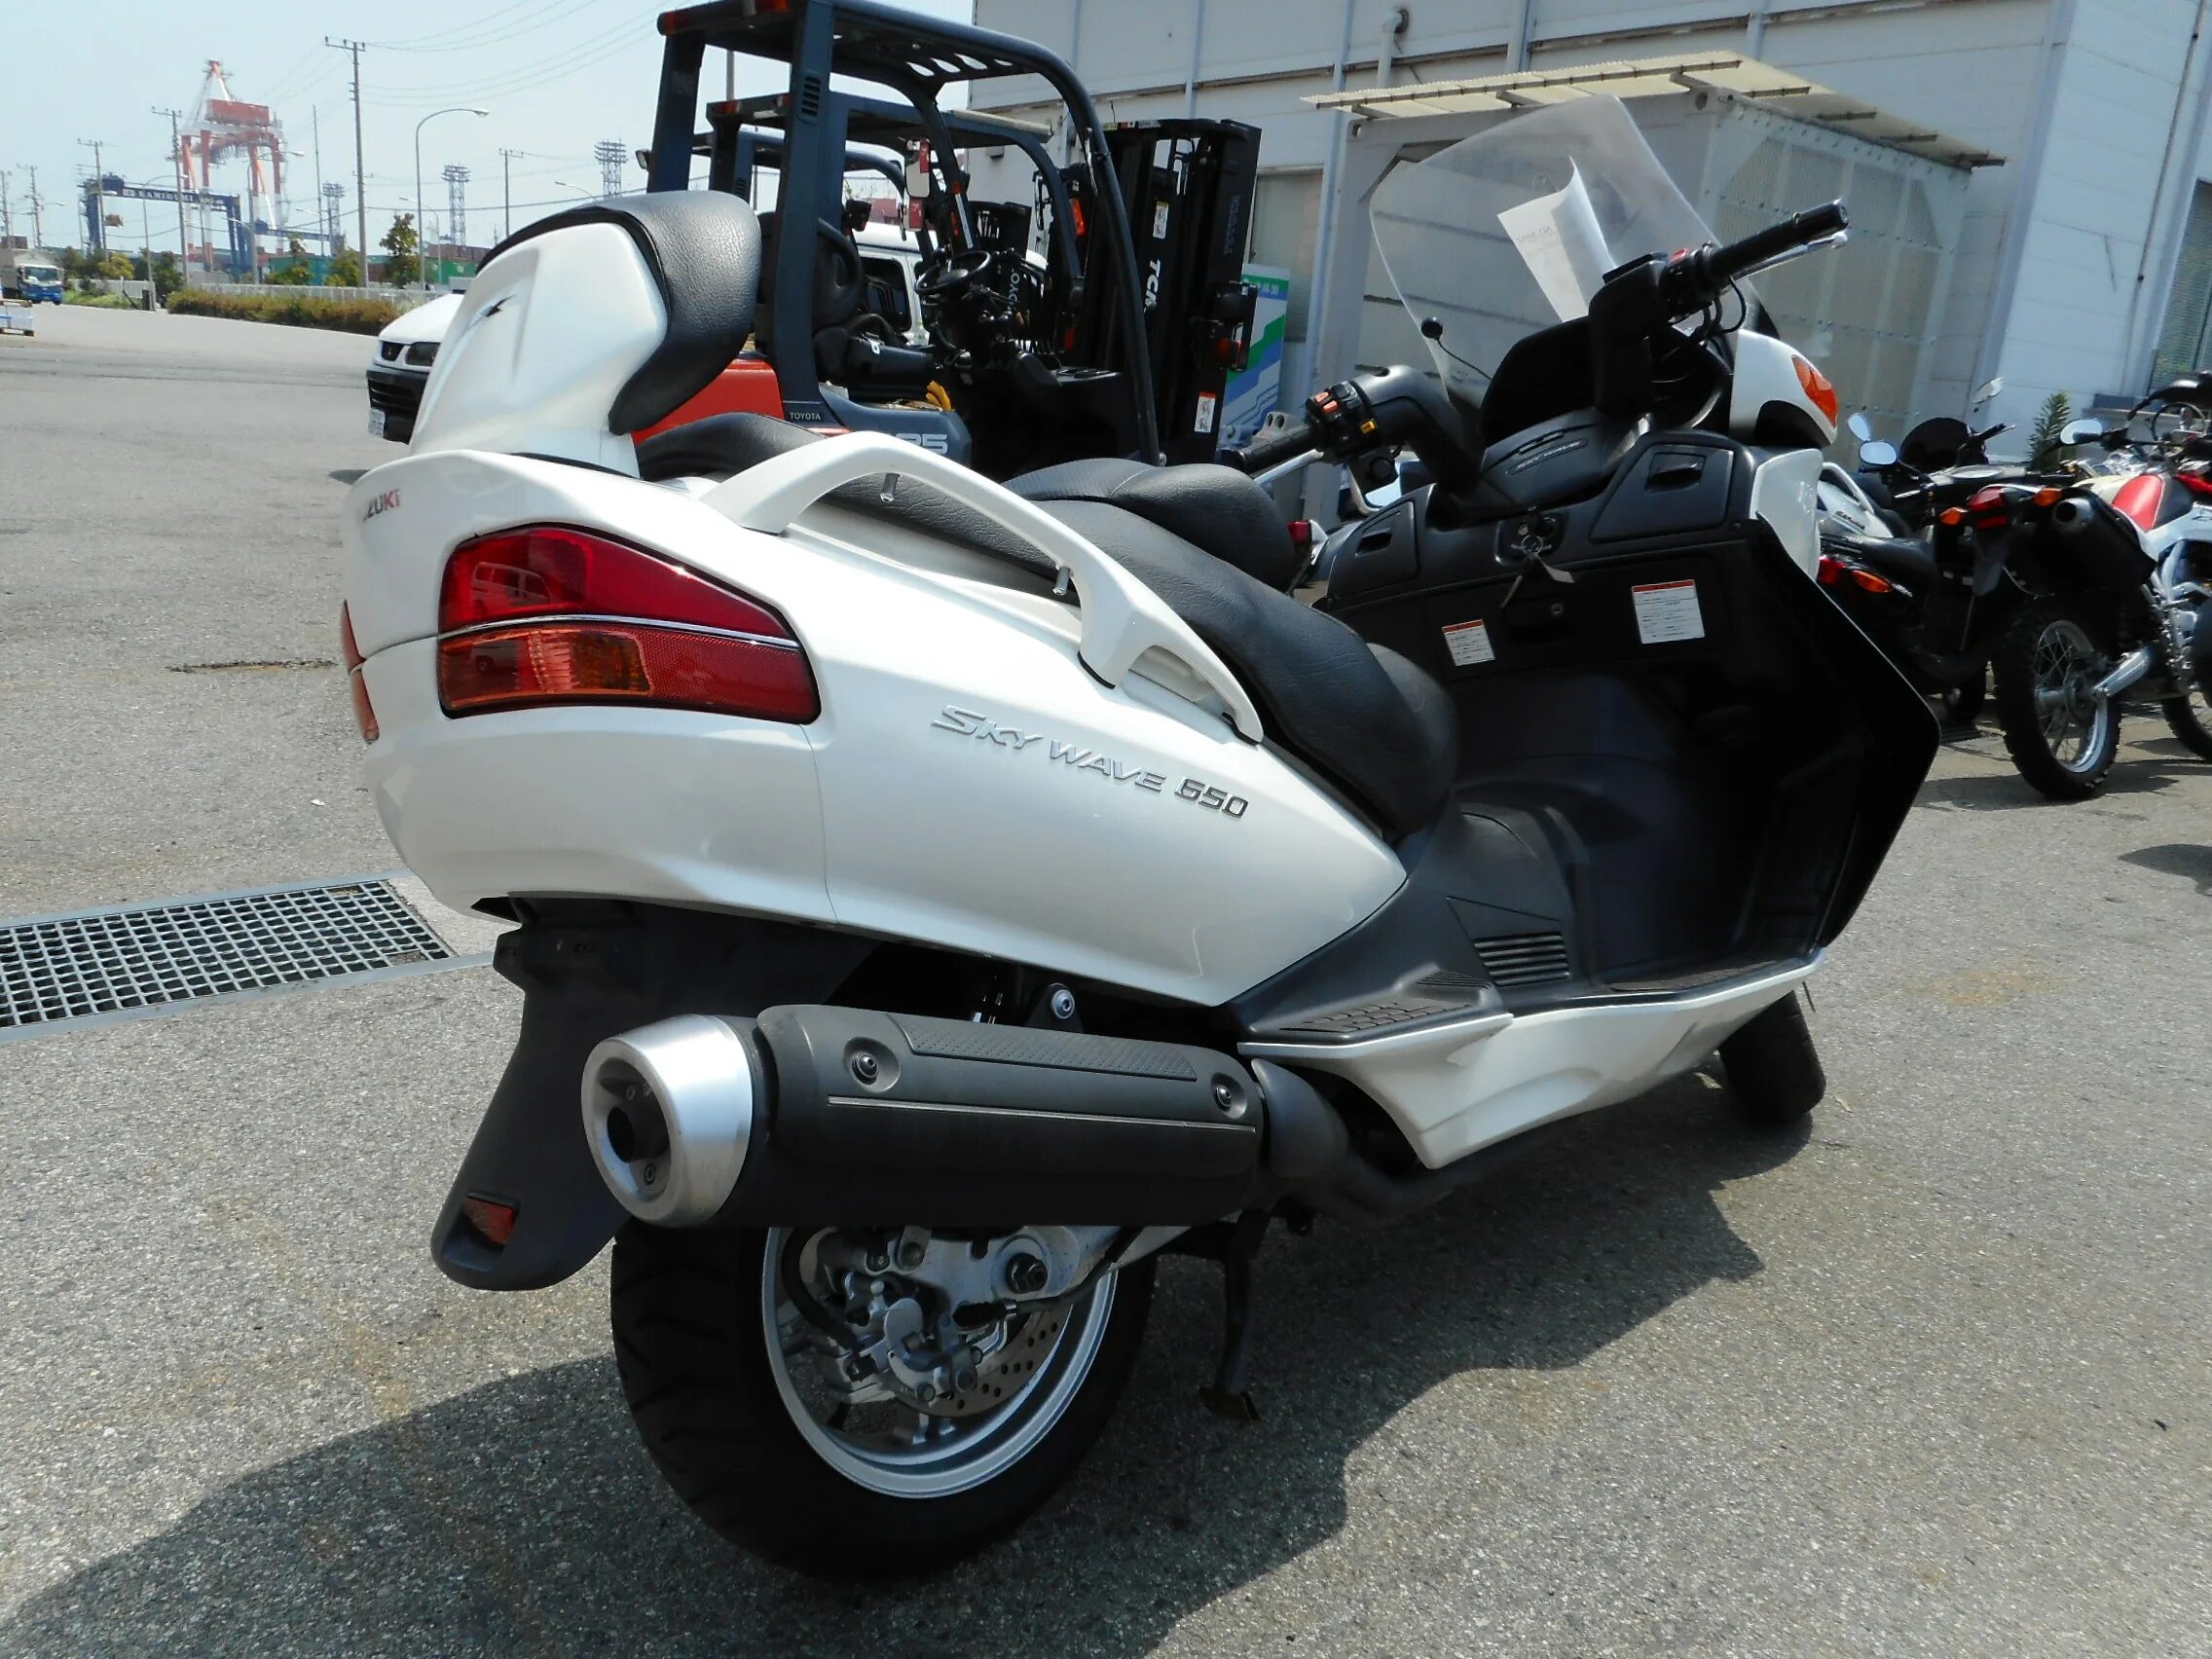 Skywave 650. Мотоцикл Suzuki Skywave 650. Burgman 650 белый.